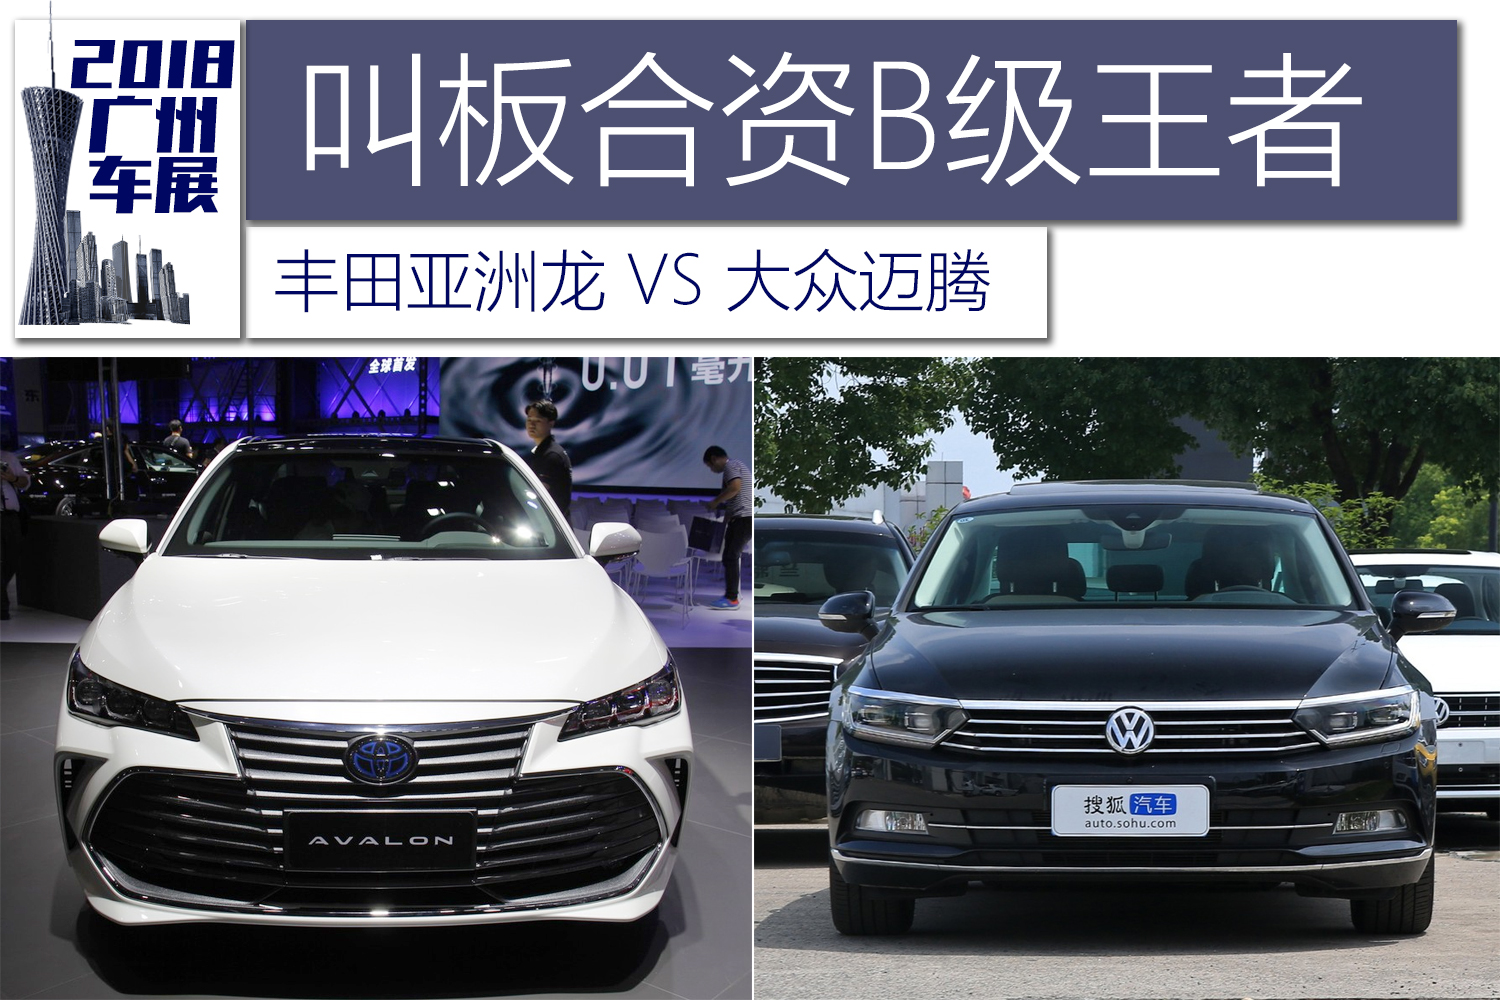 2018广州车展:一汽丰田亚洲龙对比一汽-大众迈腾